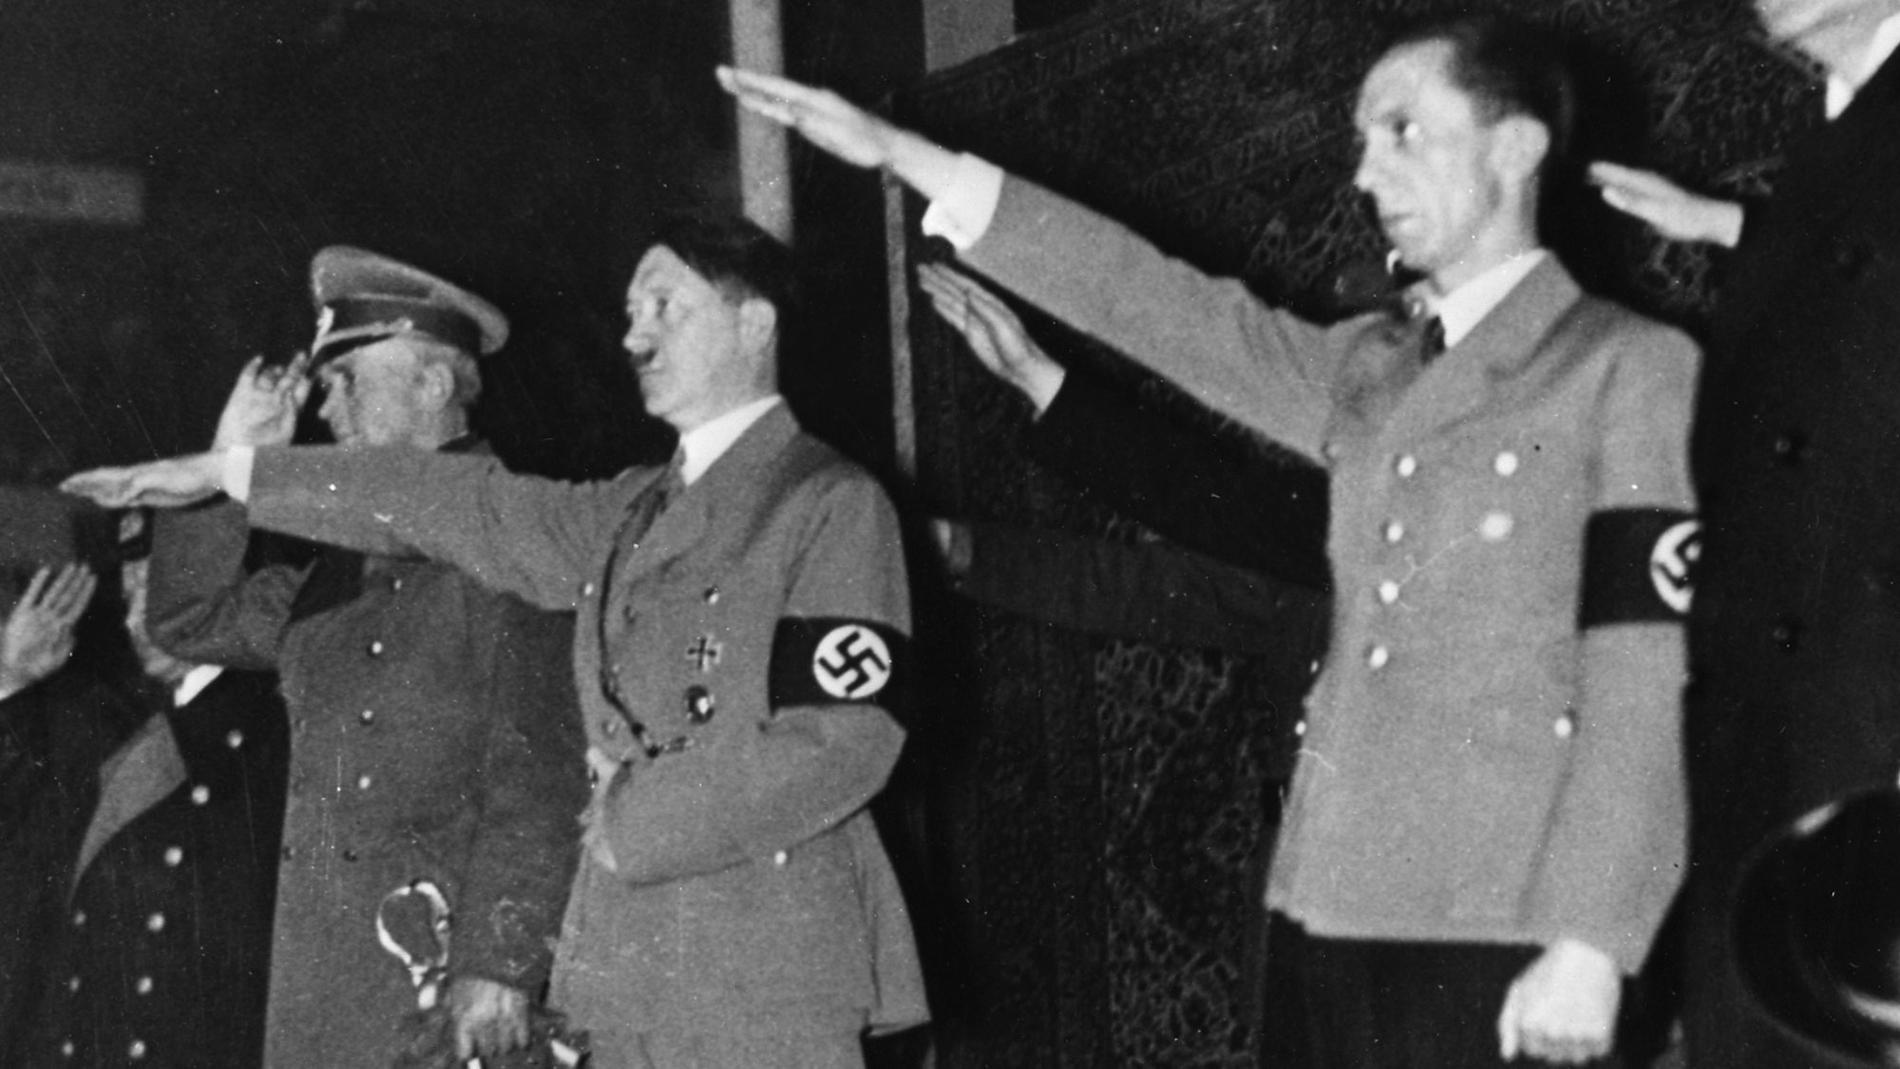 Joseph Goebbels iscensatte i november 1938 Kristallnatten, som många anser blev startpunkten för Förintelsen.